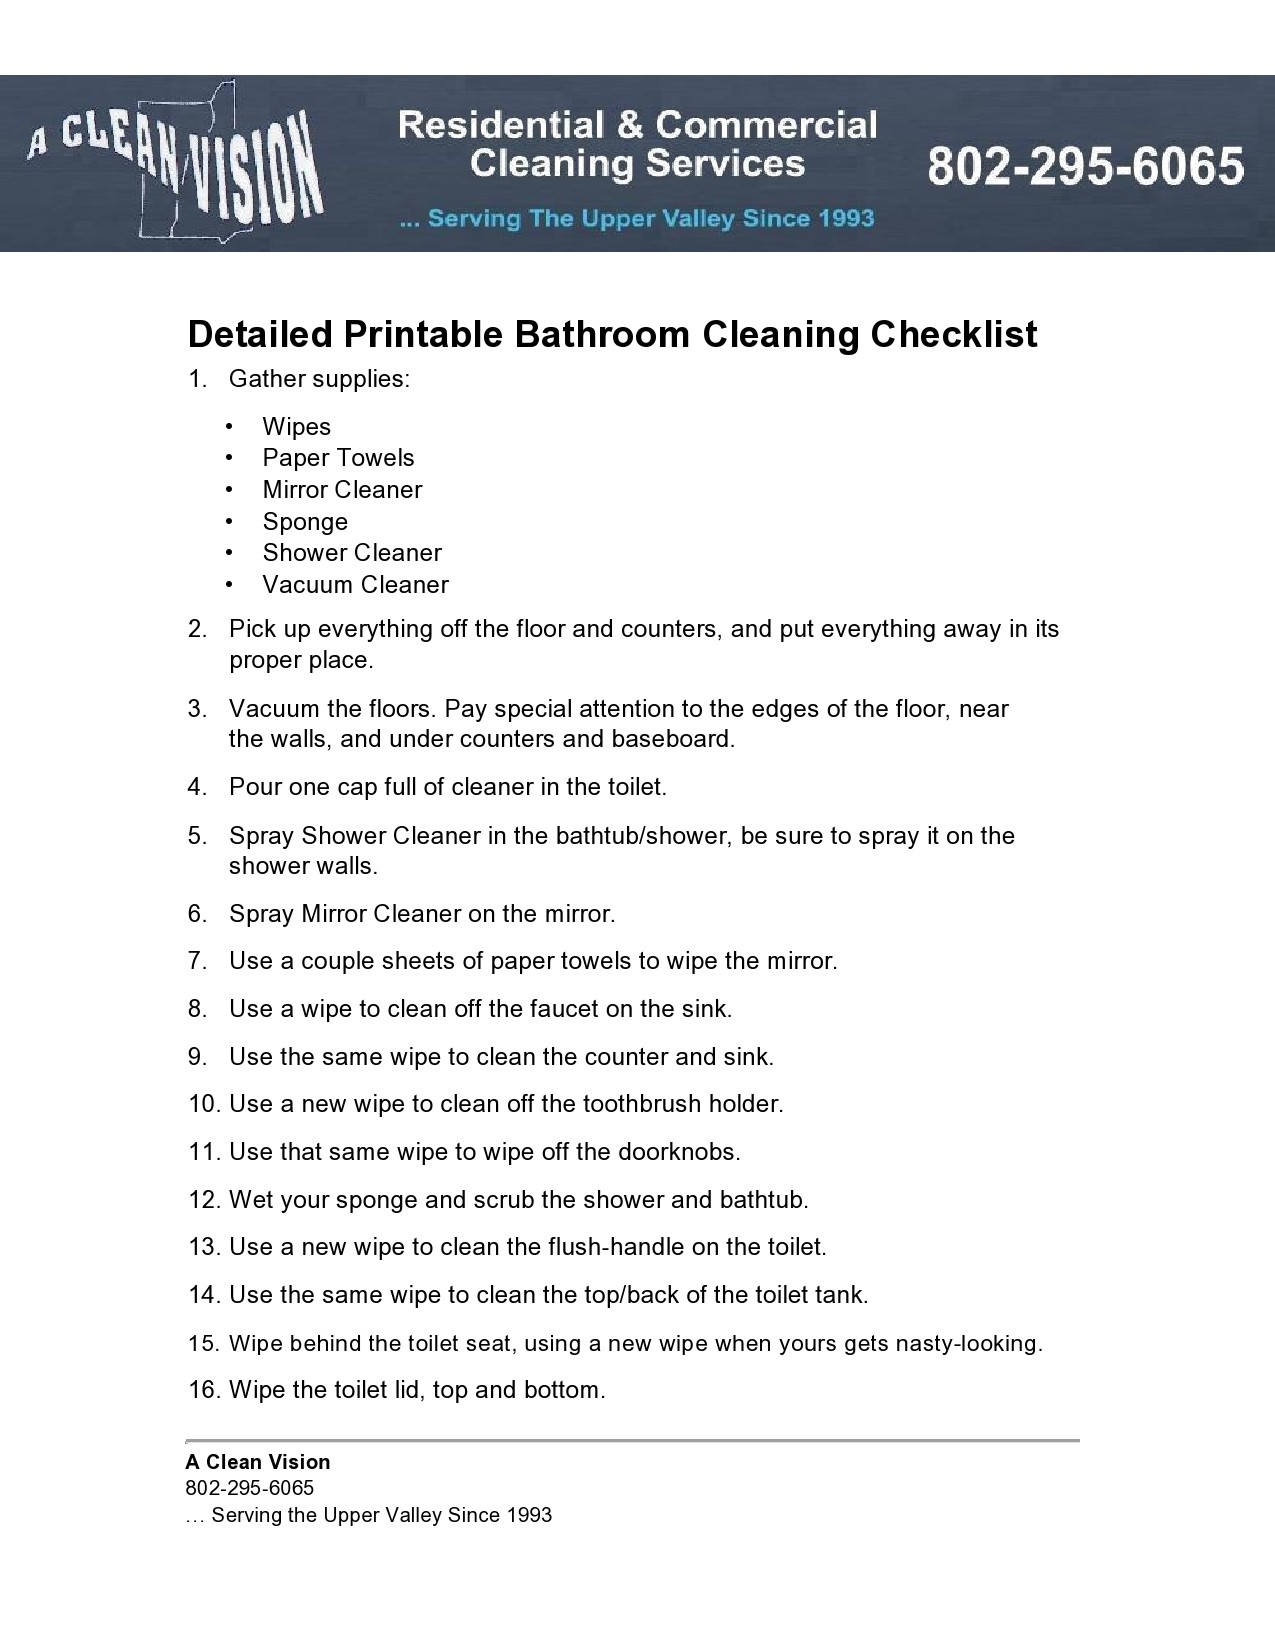 Free bathroom cleaning checklist 09